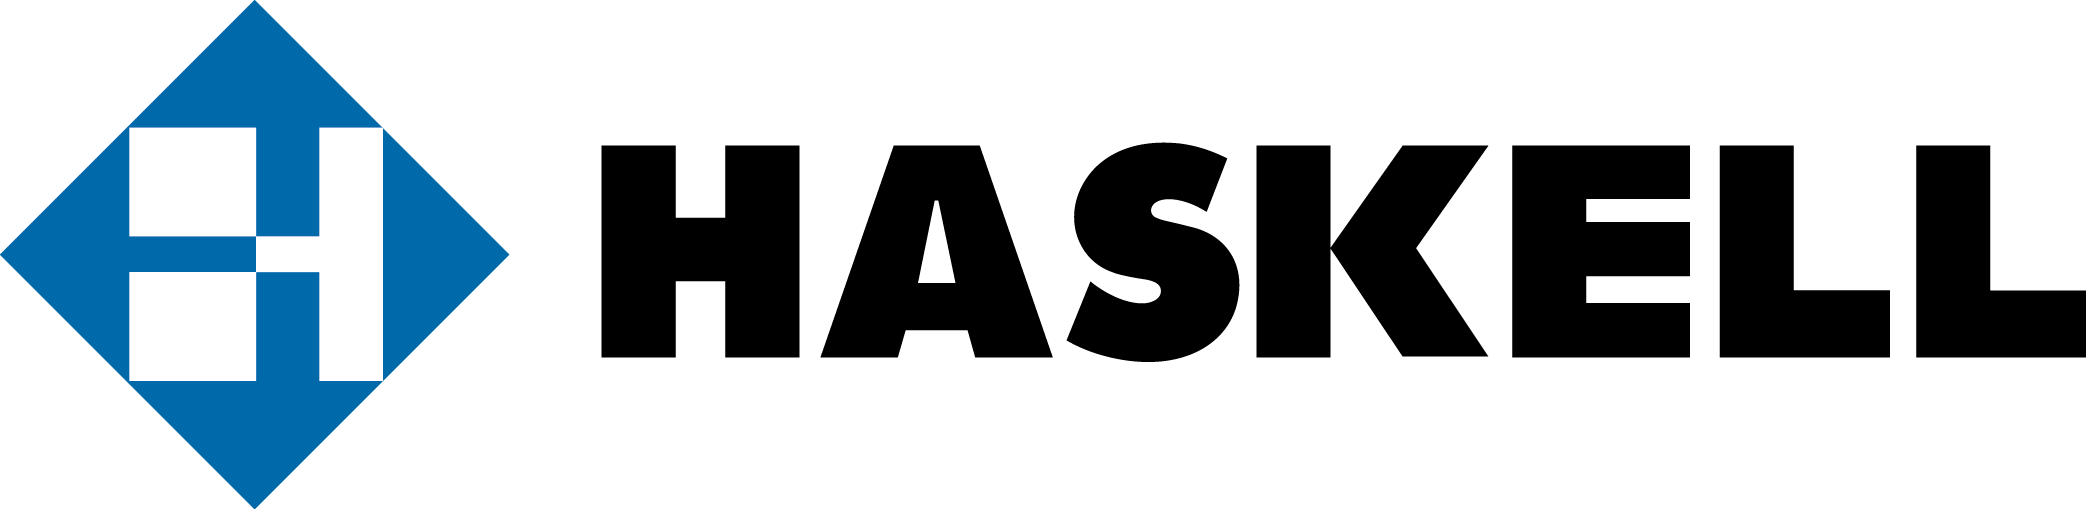 Haskell Logo photo - 1